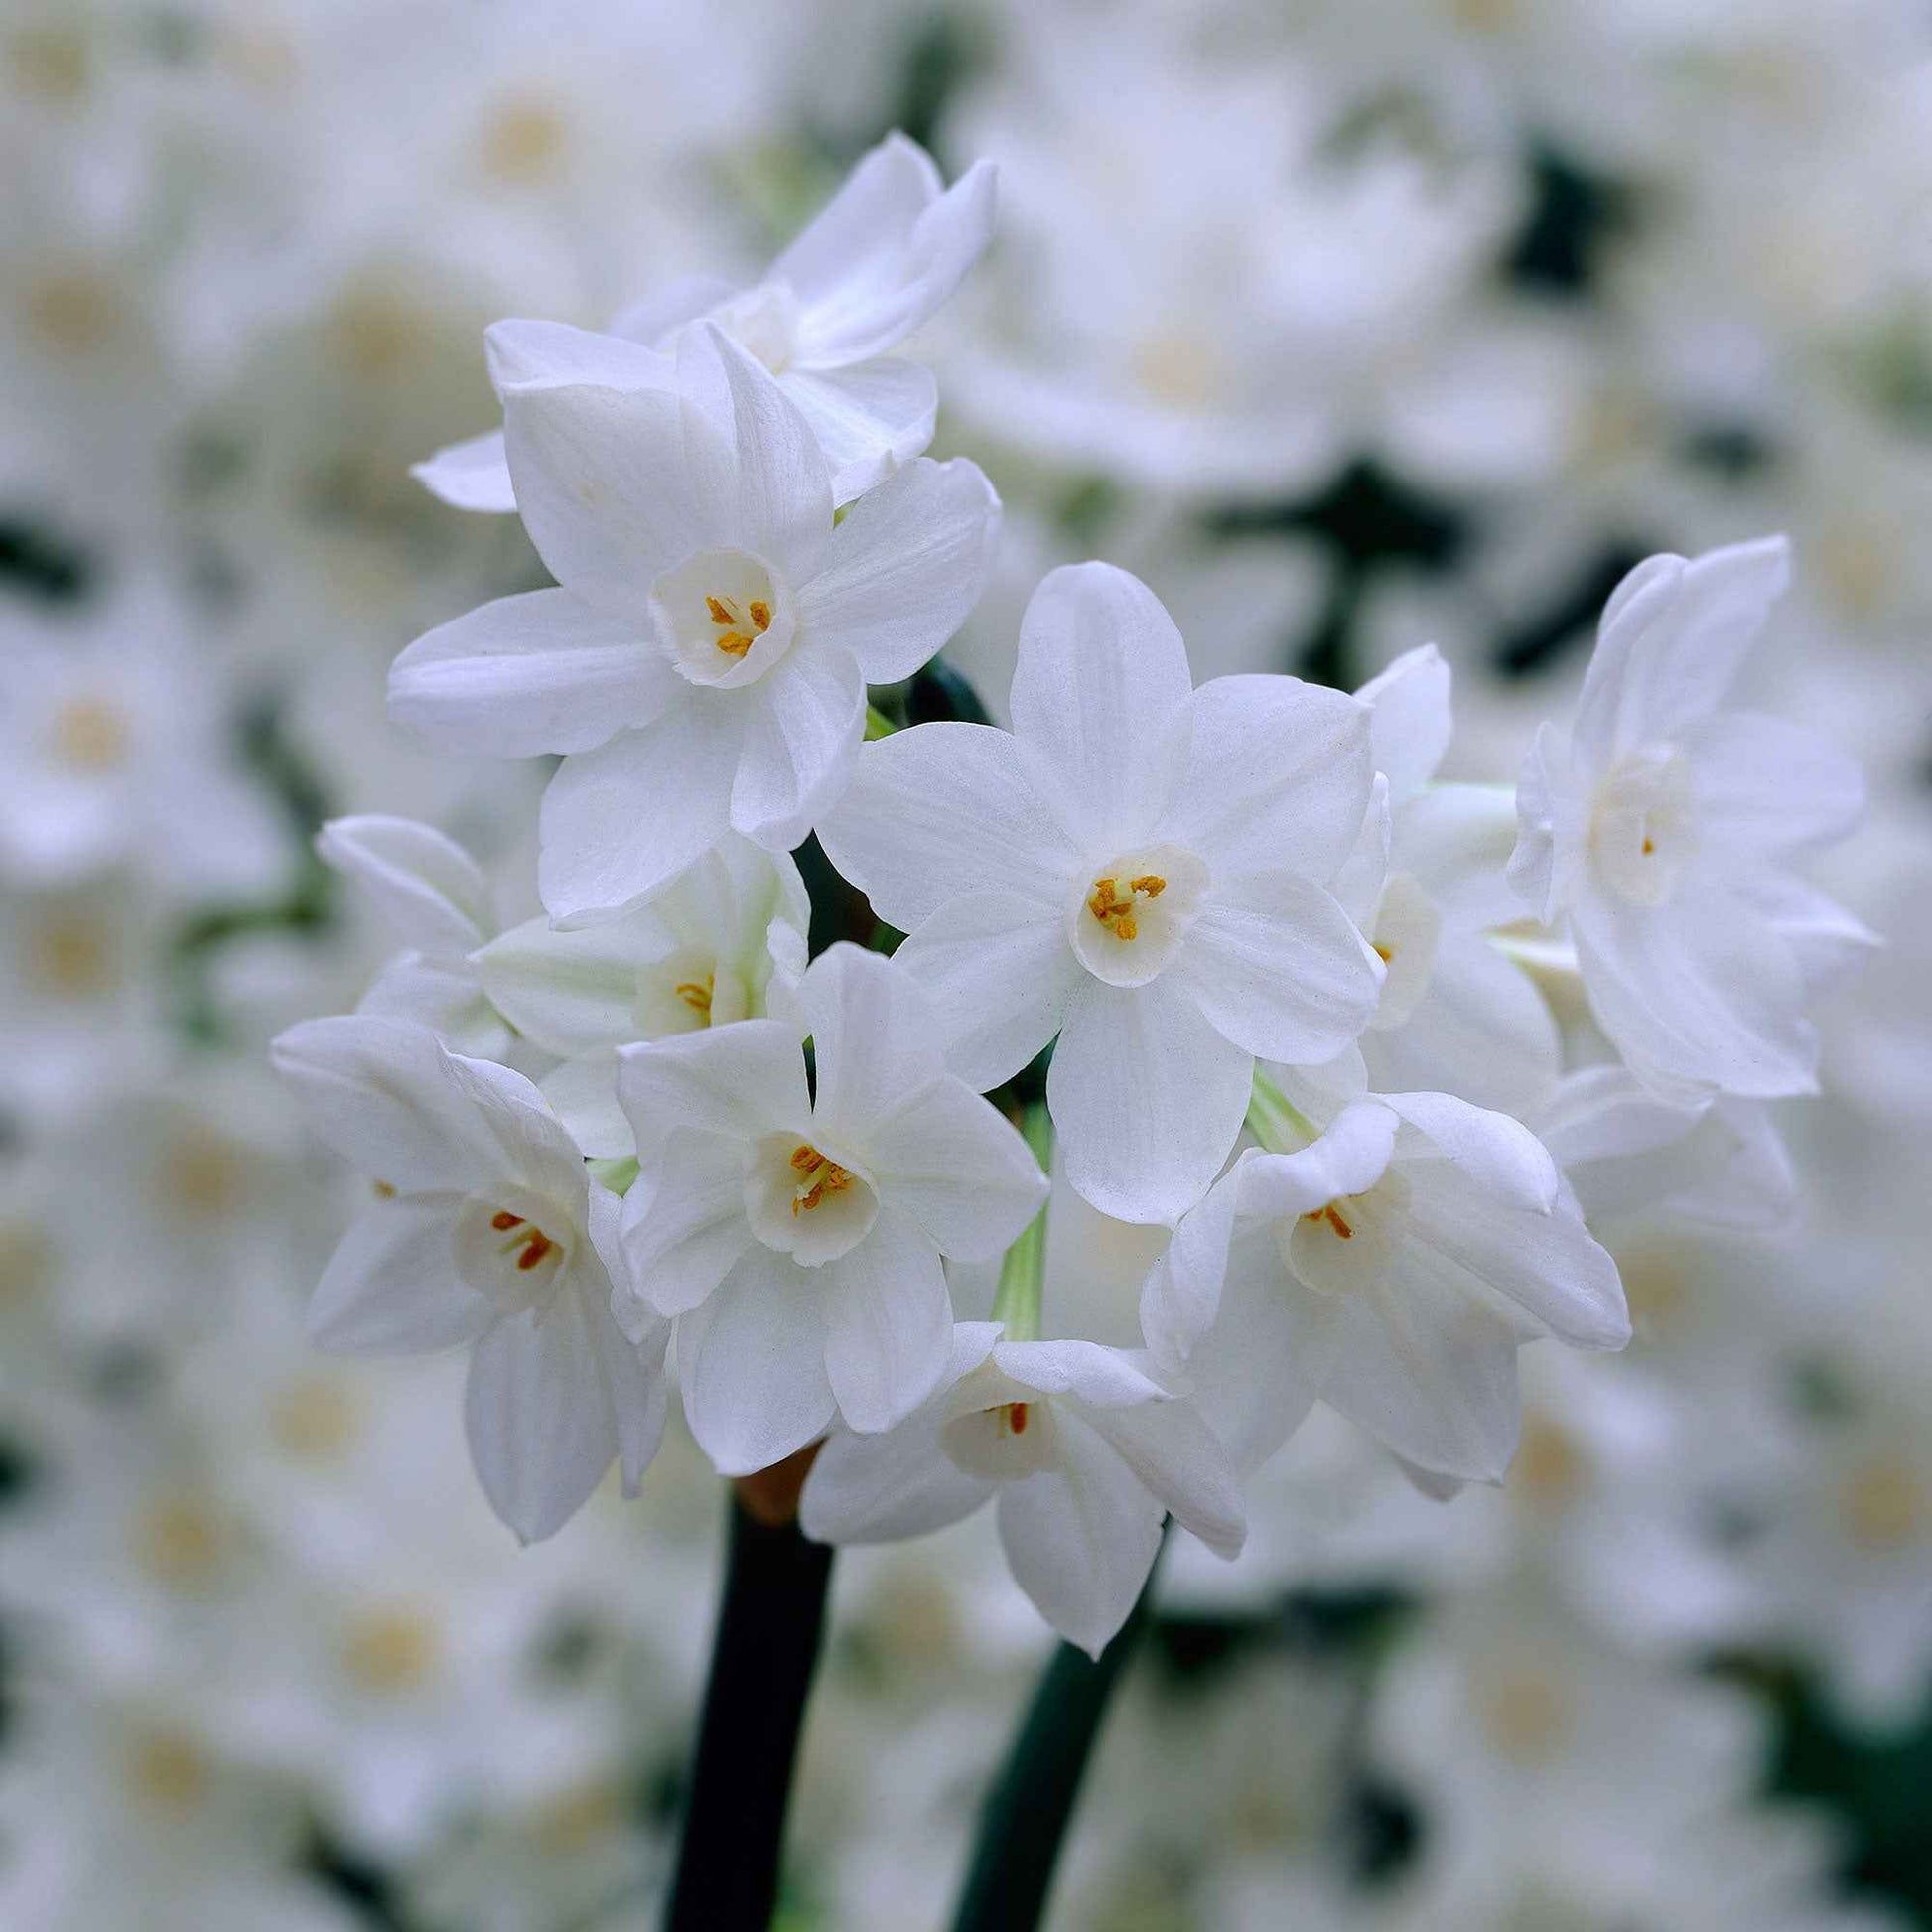 10x Narcisse Narcissus 'Paperwhite' blanc - Bulbes de fleurs pluriannuelles